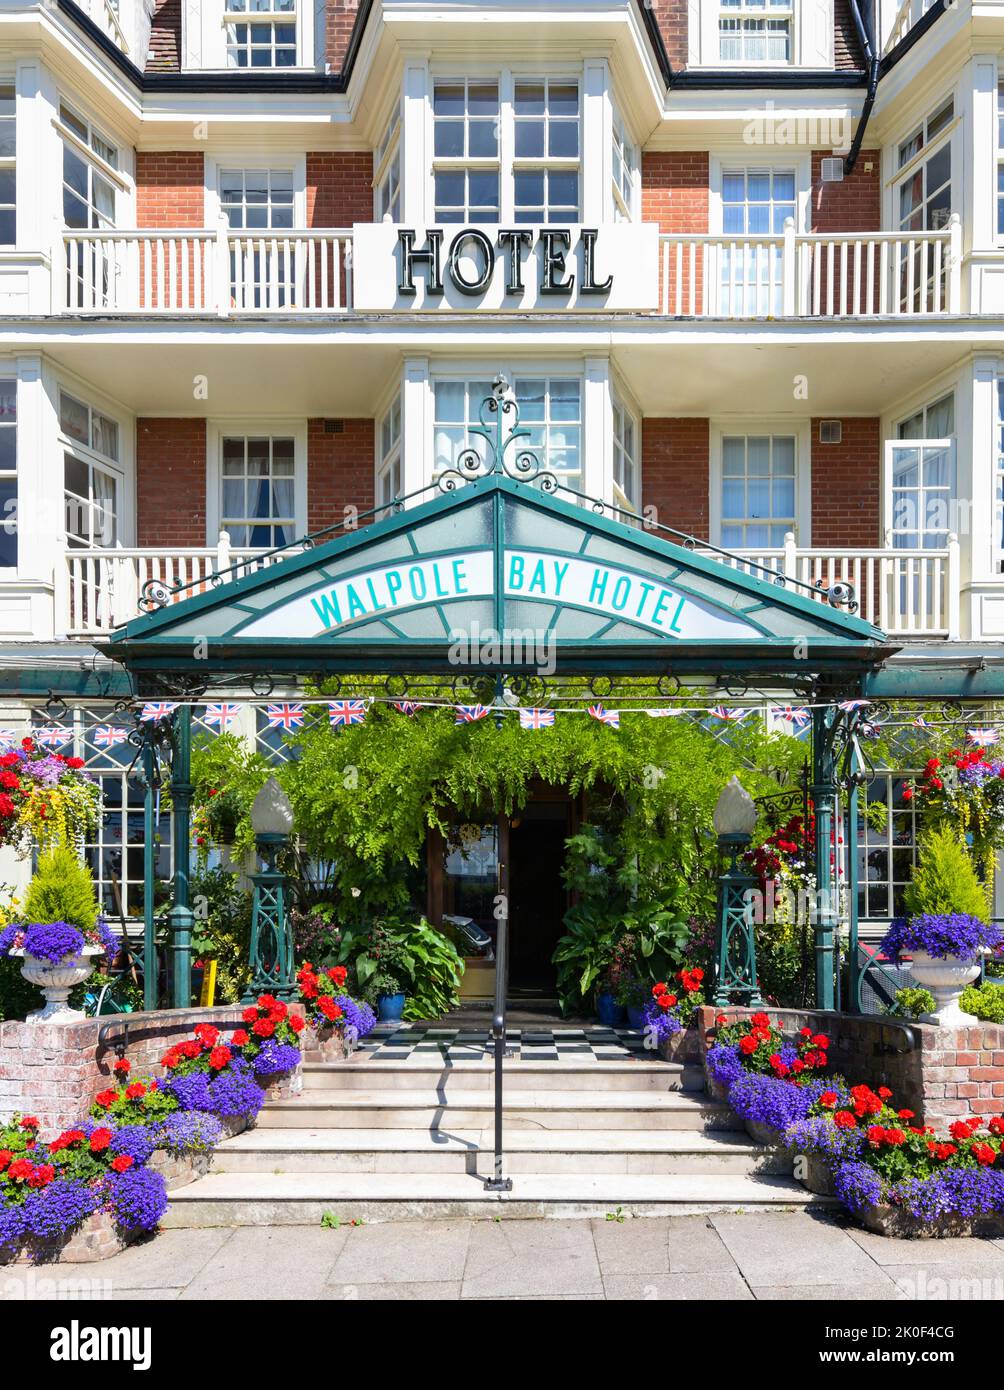 Walpole Bay Hotel, Cliftonville, Margate, Kent, England, UK Stock Photo